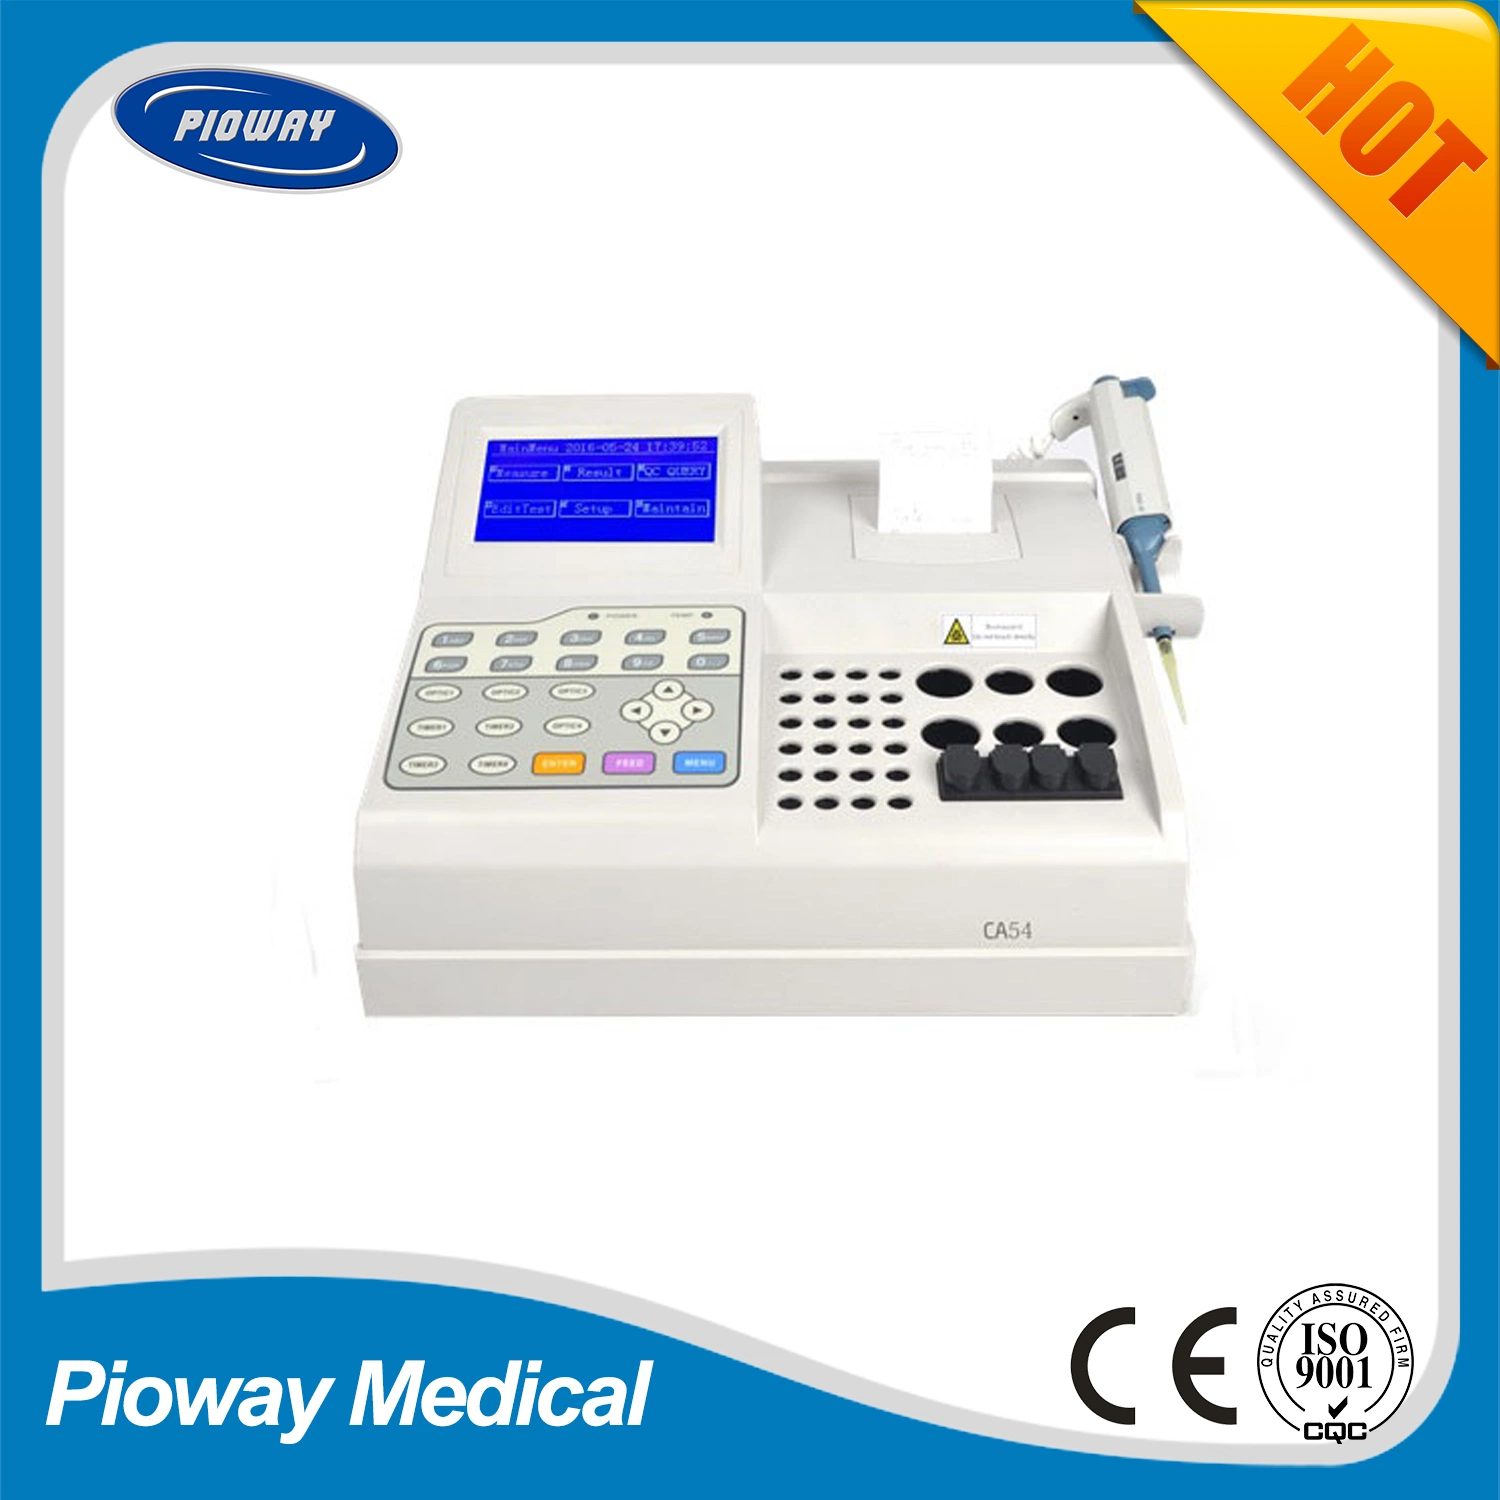 Laboratório e equipamentos hospitalares 4 Channel analisador de coagulação do sangue (CA54)